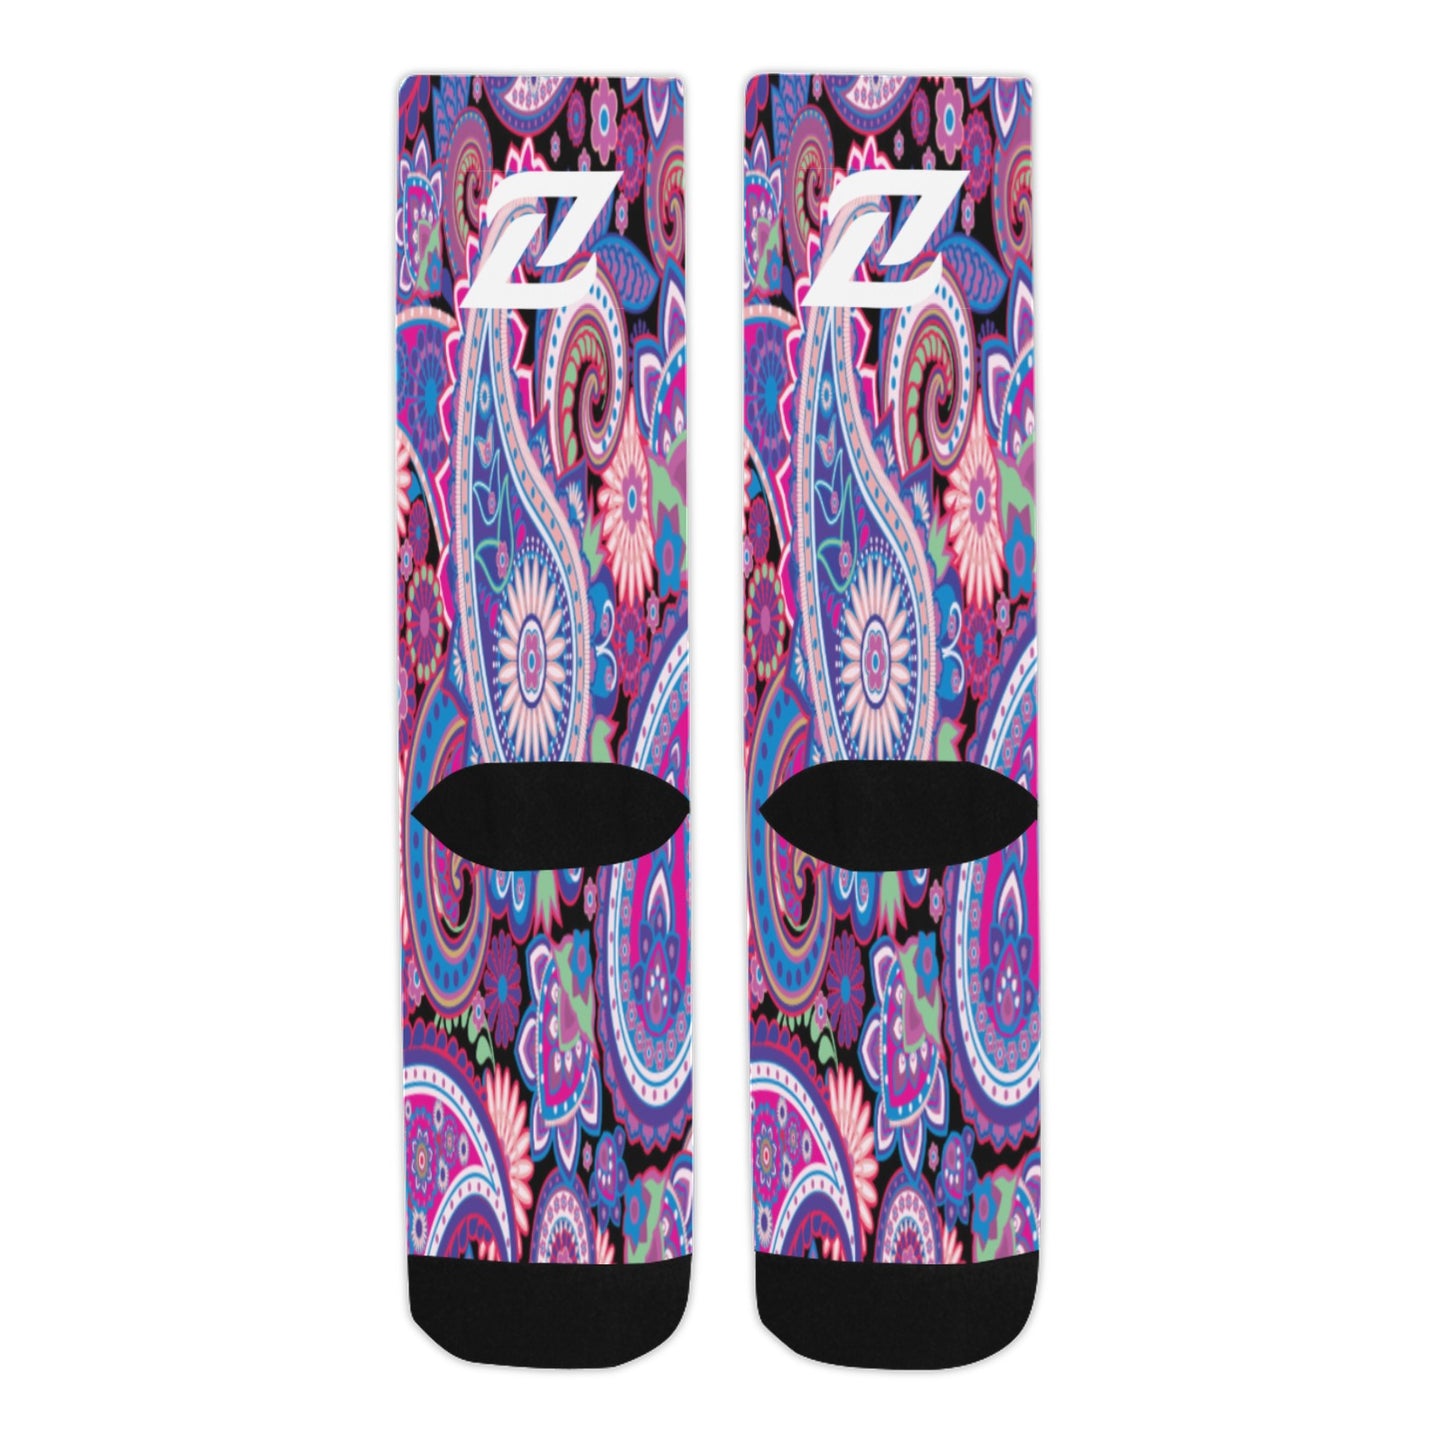 Zen Socks - Purple Paisley